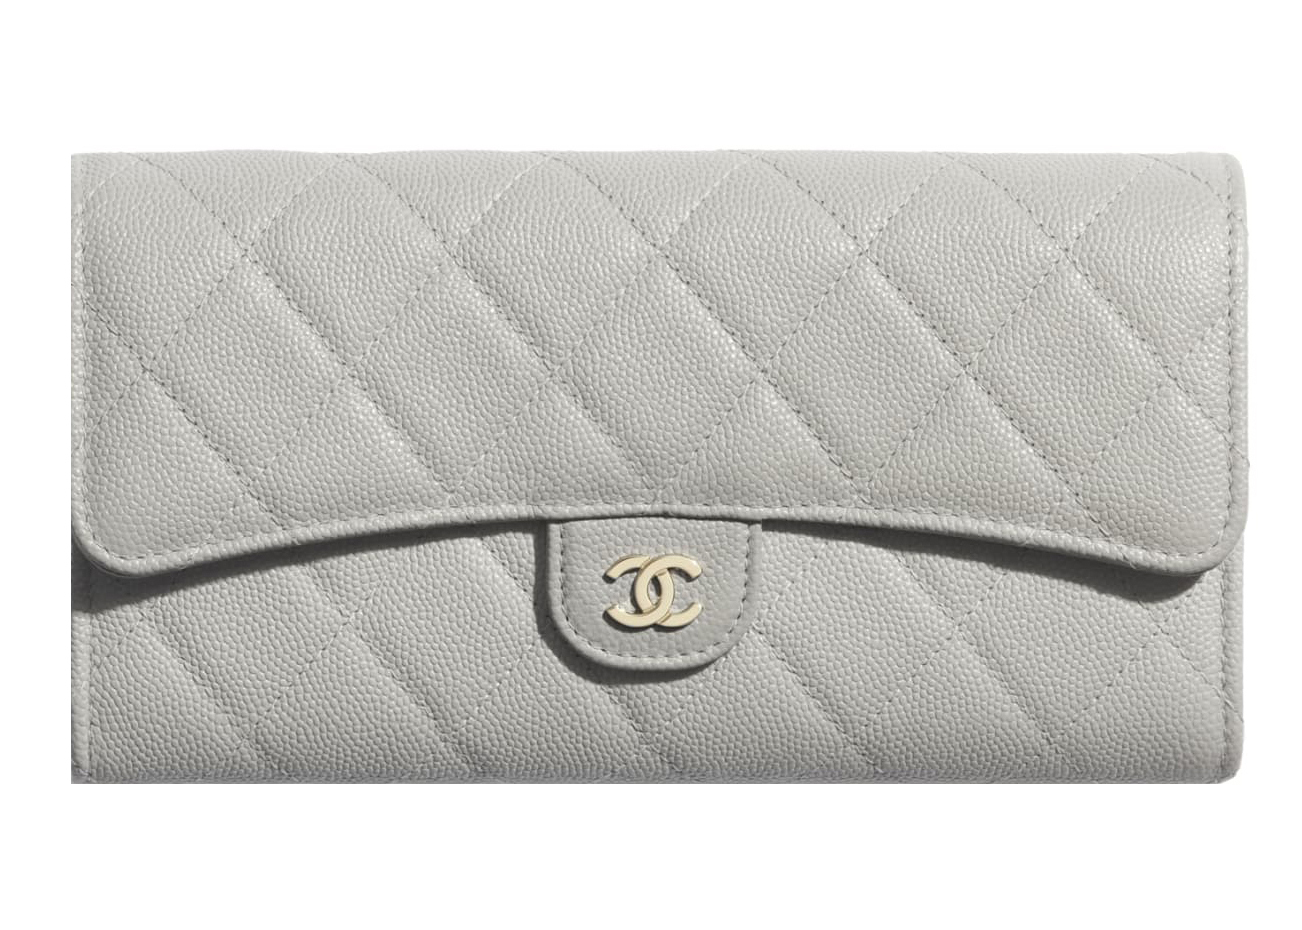 Mua Ví Chanel Classic Caviar Quilted Flap Card Holder Grey Gold Hardware  Màu Xám  Chanel  Mua tại Vua Hàng Hiệu h089205